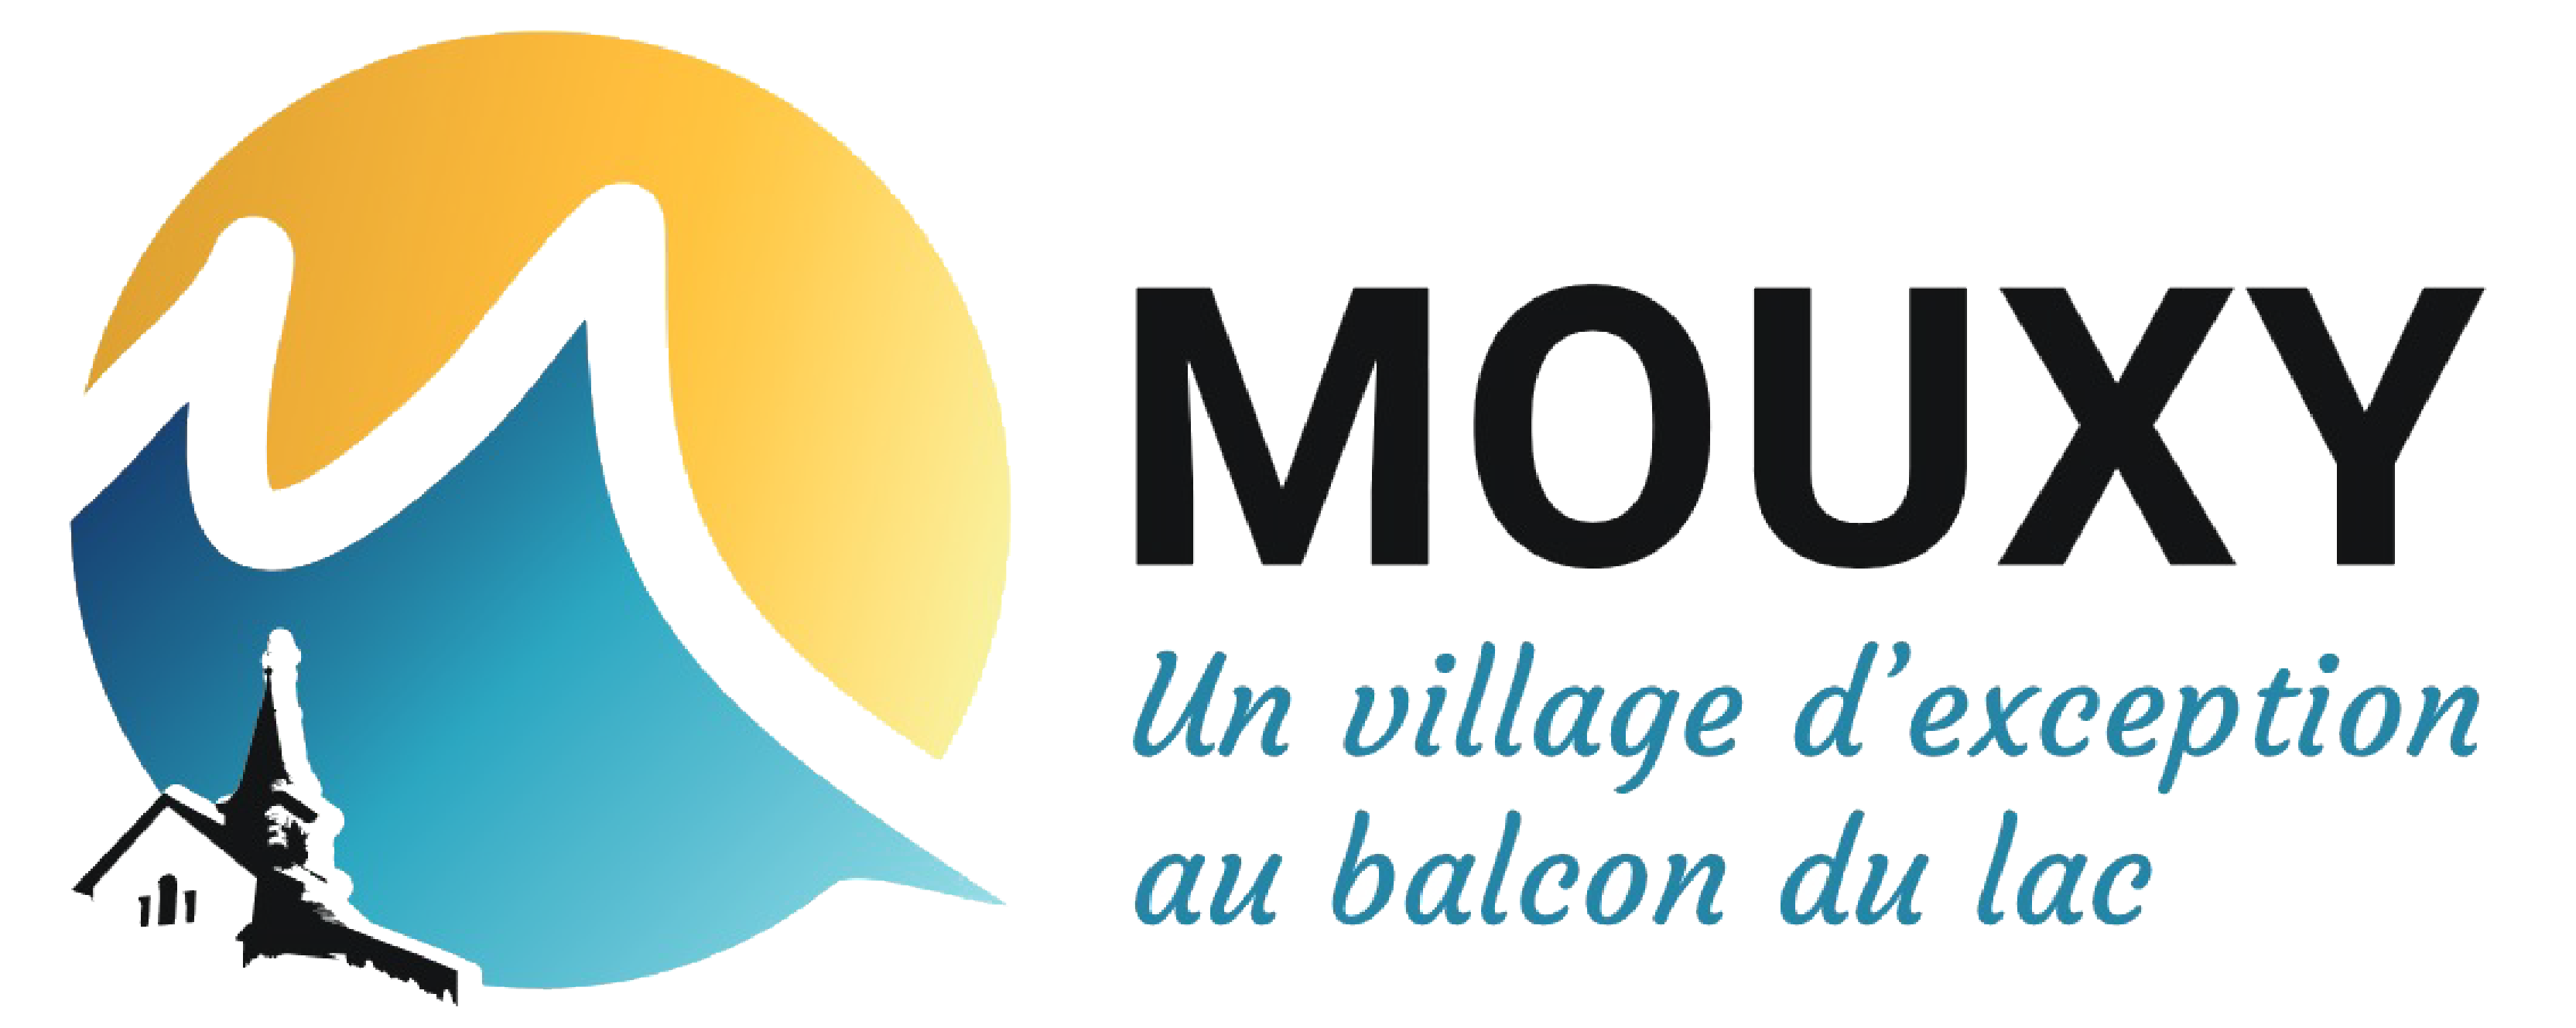 Mouxy, un village d'exception au balcon du lac du Bourget